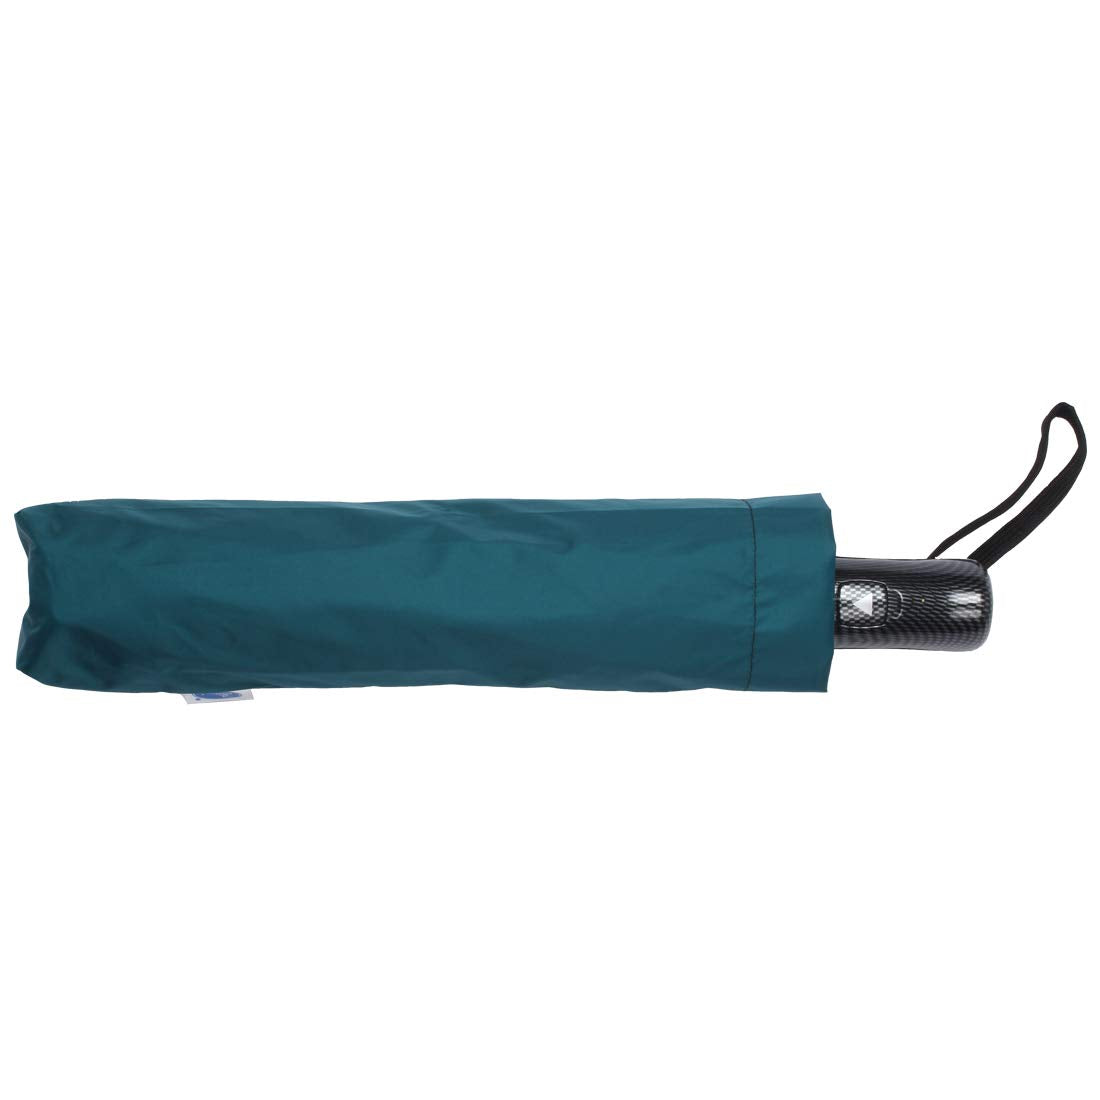 234 -3 Fold Premium Umbrella 